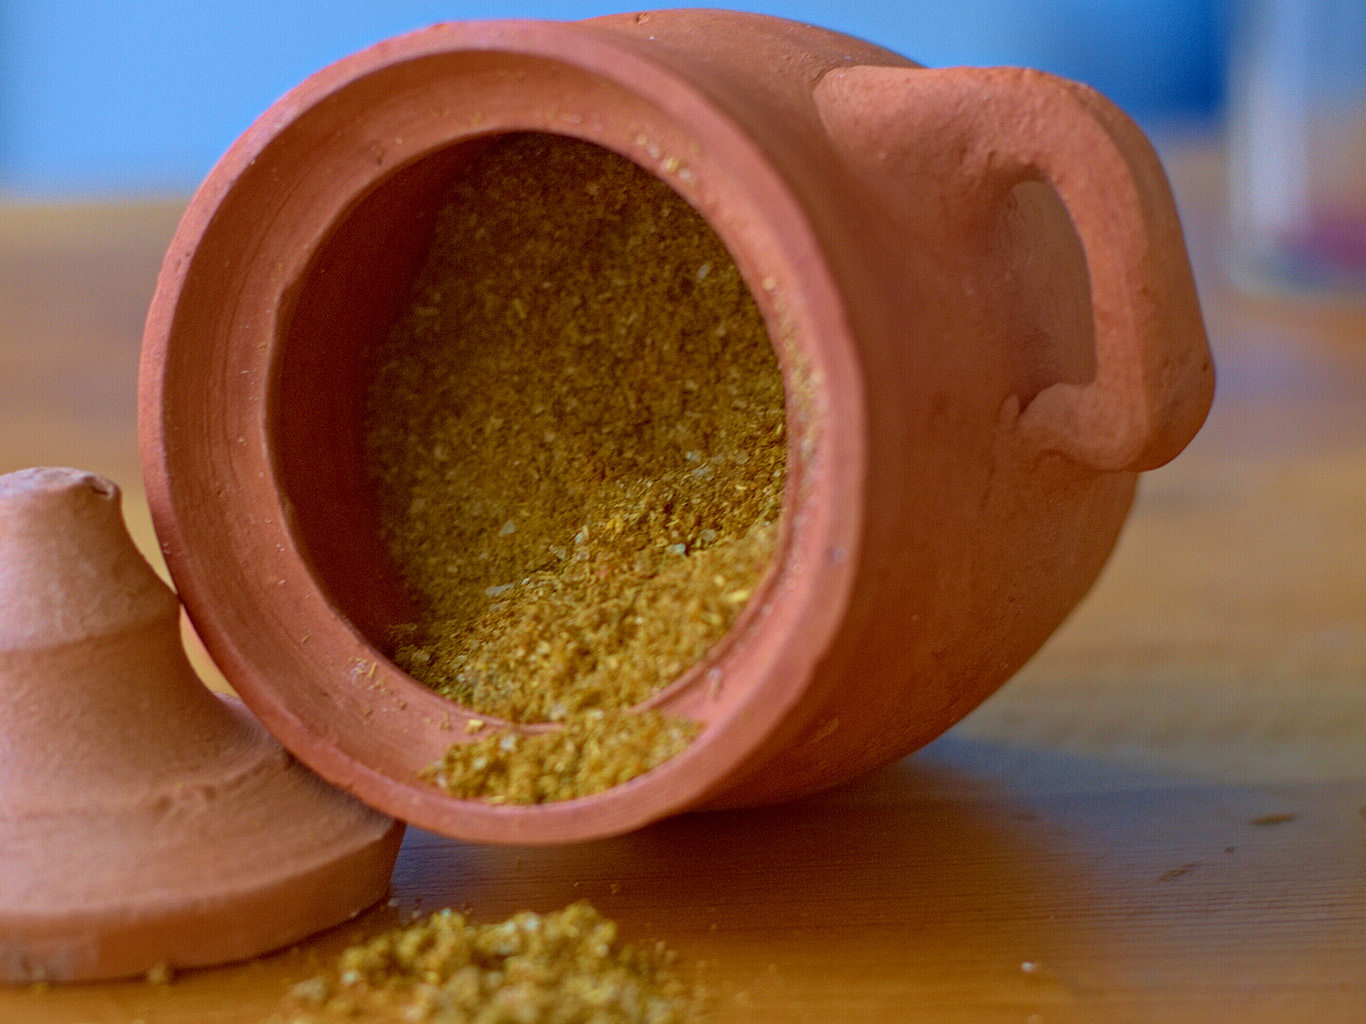 Ve svanetské soli najdeme koriandr, česnek, pískavici, papriku, měsíček, kopr